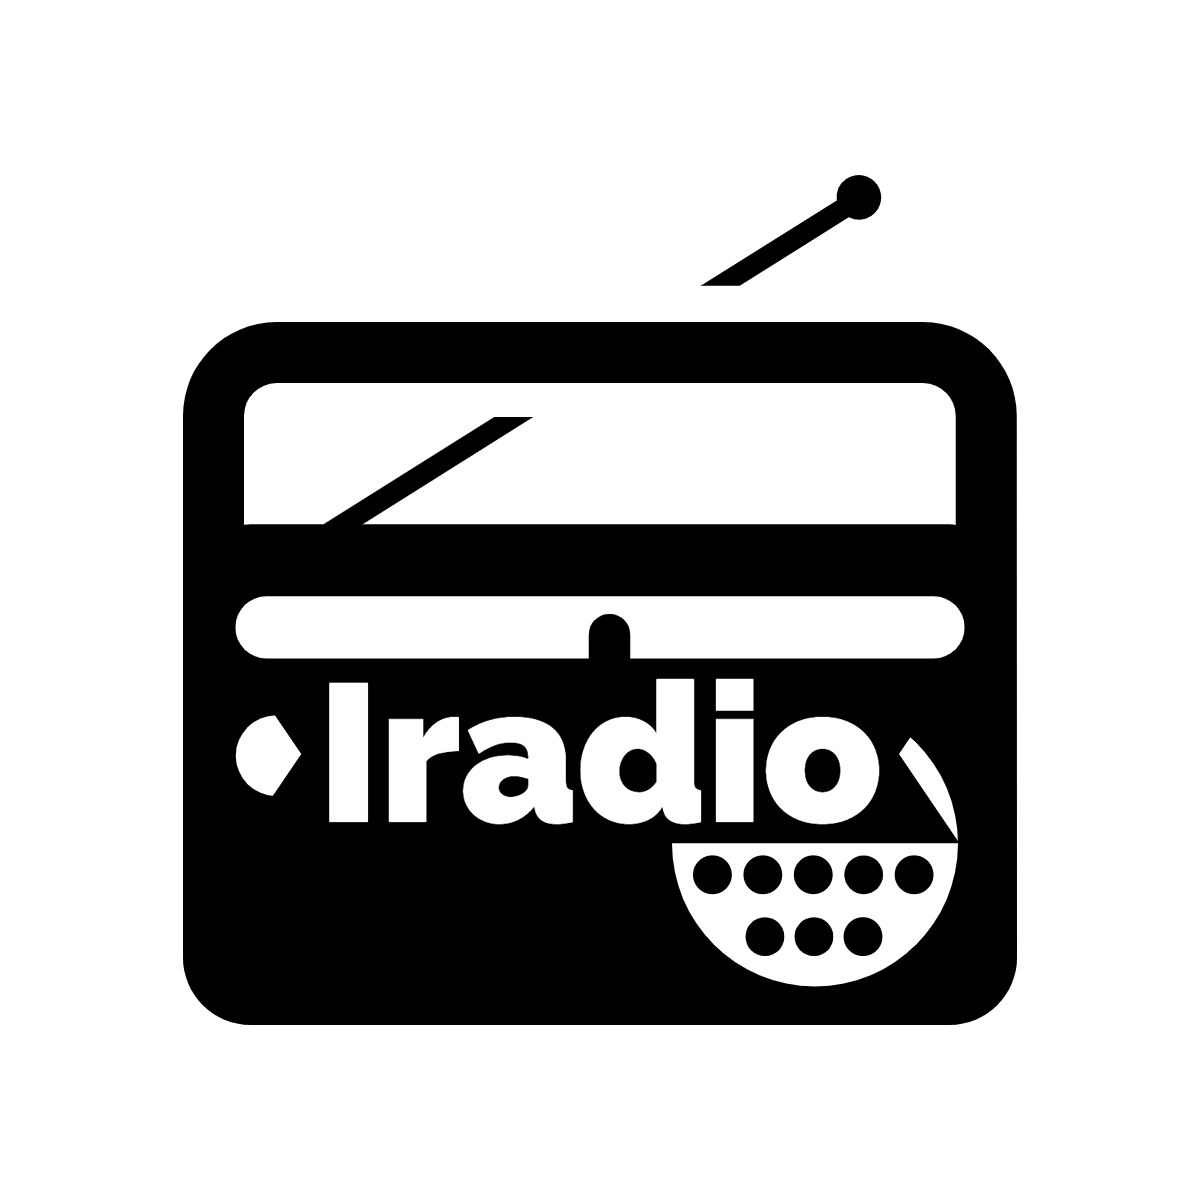 IRadio